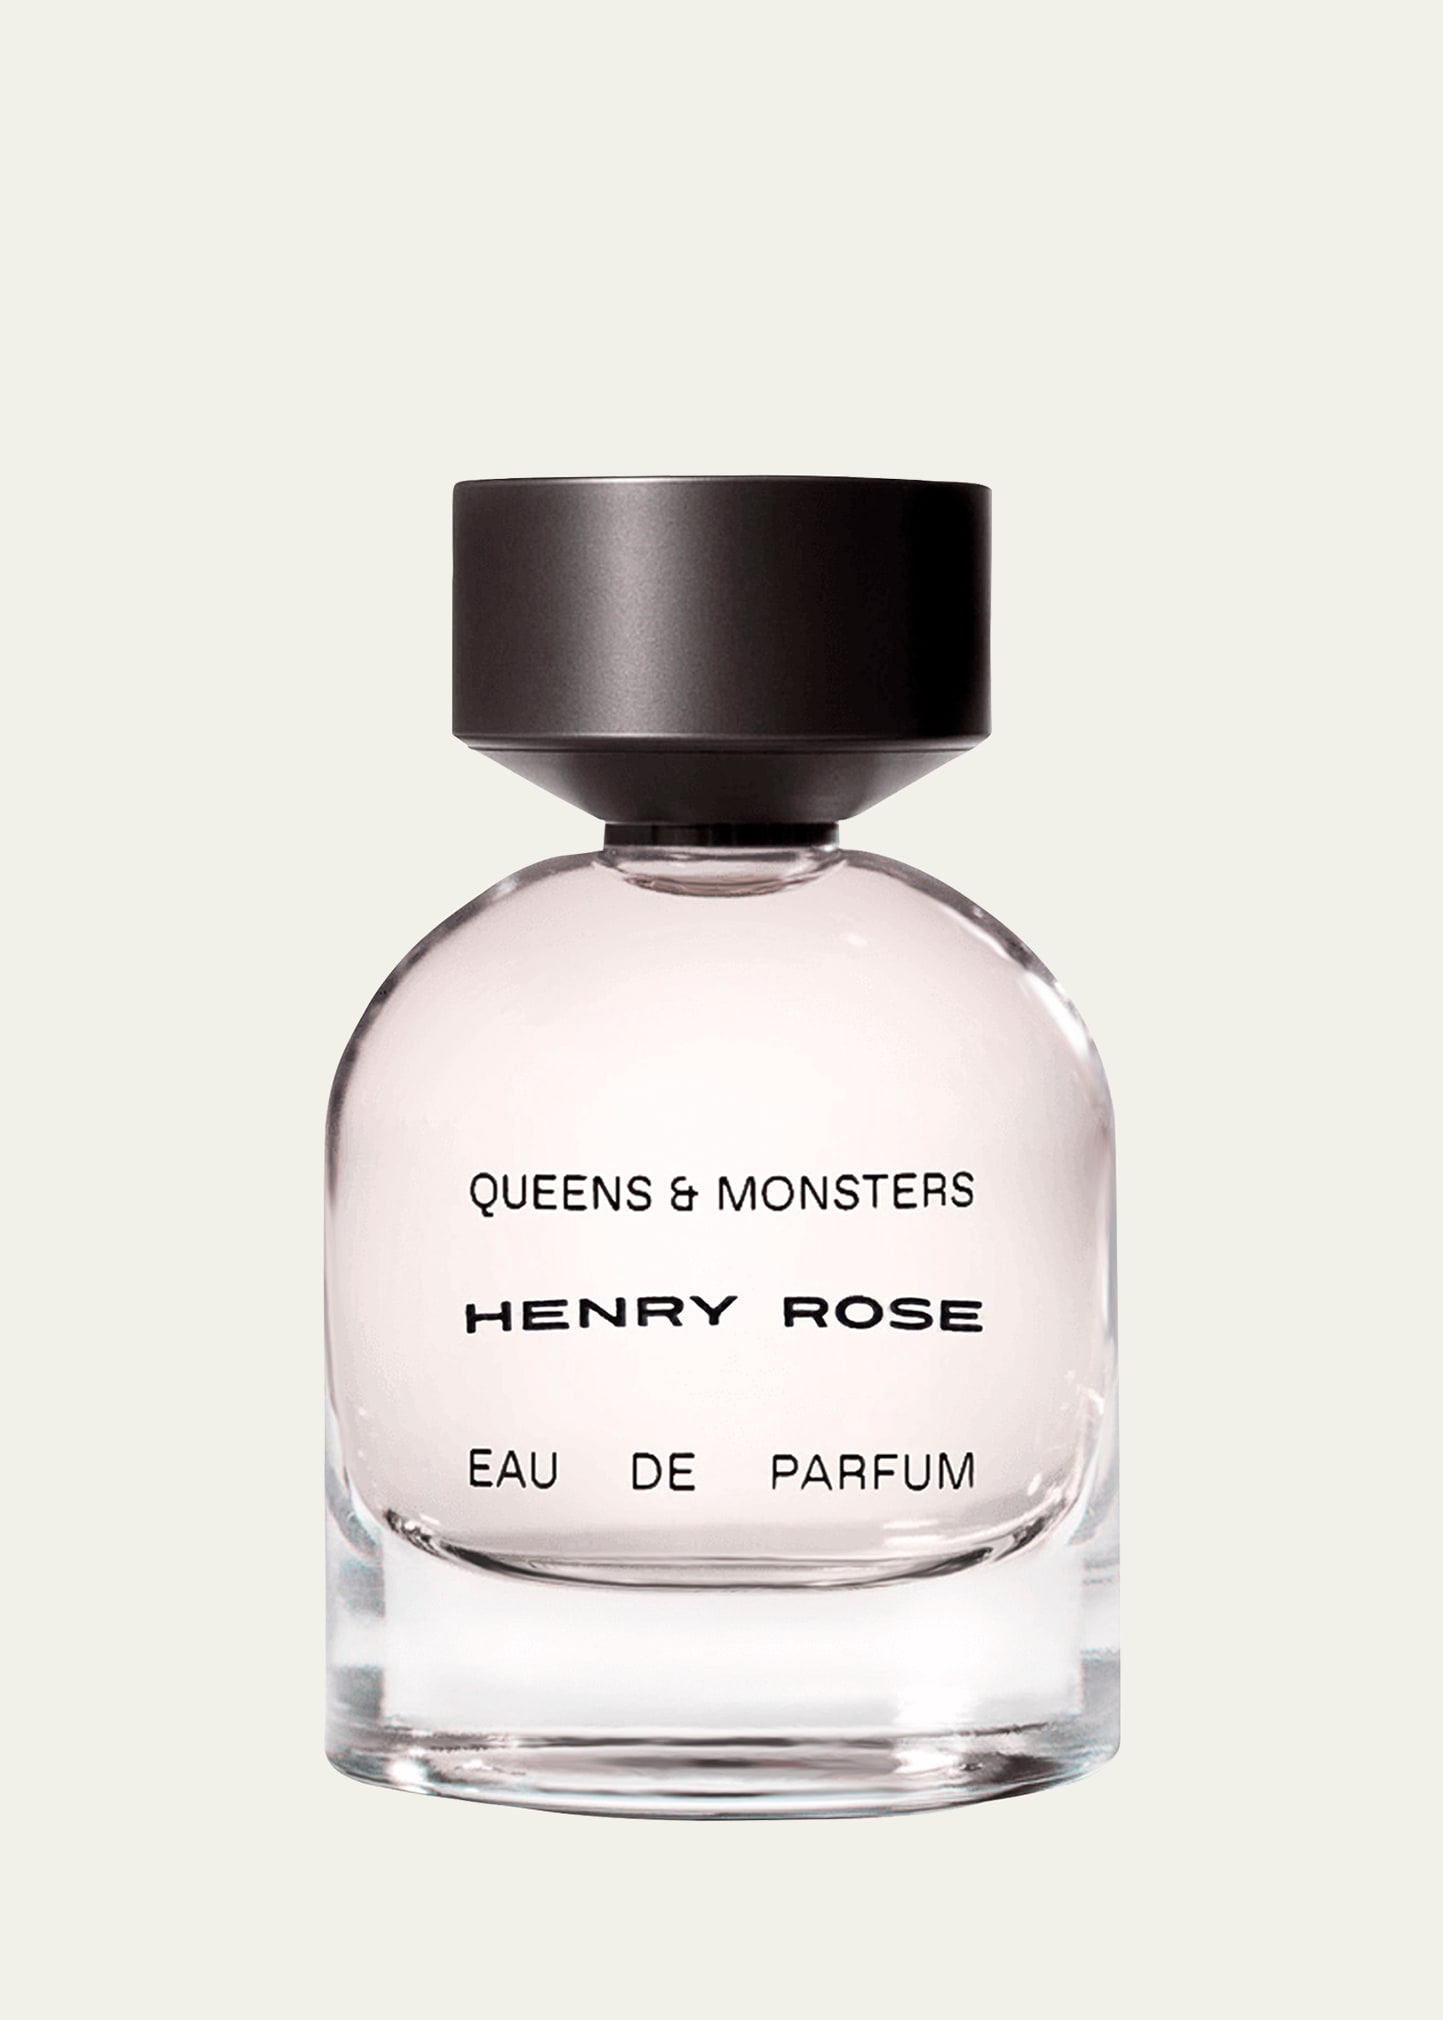 HENRY ROSE Queens and Monsters Eau de Parfum, 1.7 oz.